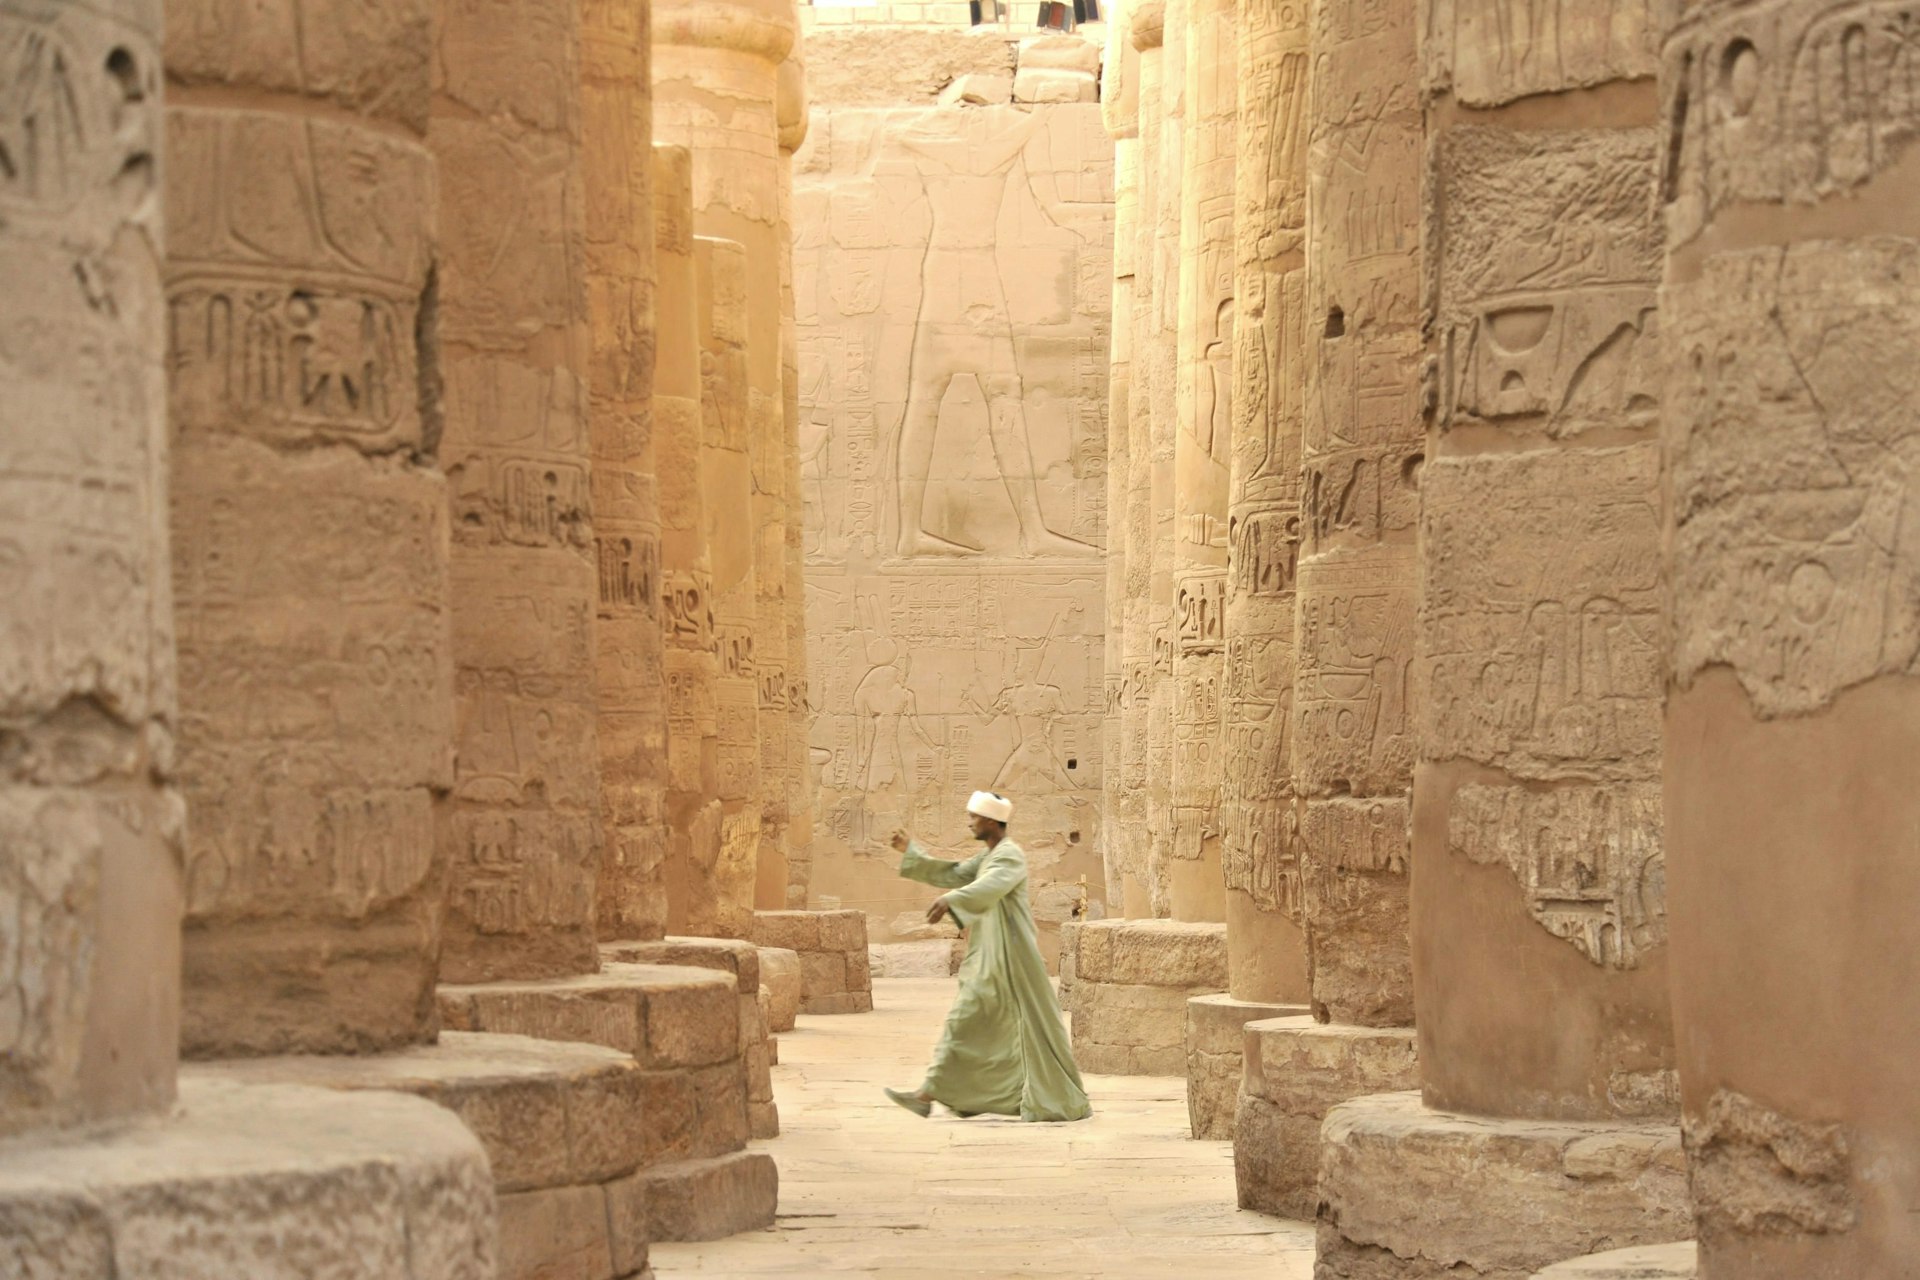 Egyption man walking through the towering pillars of the Karnak Temple.